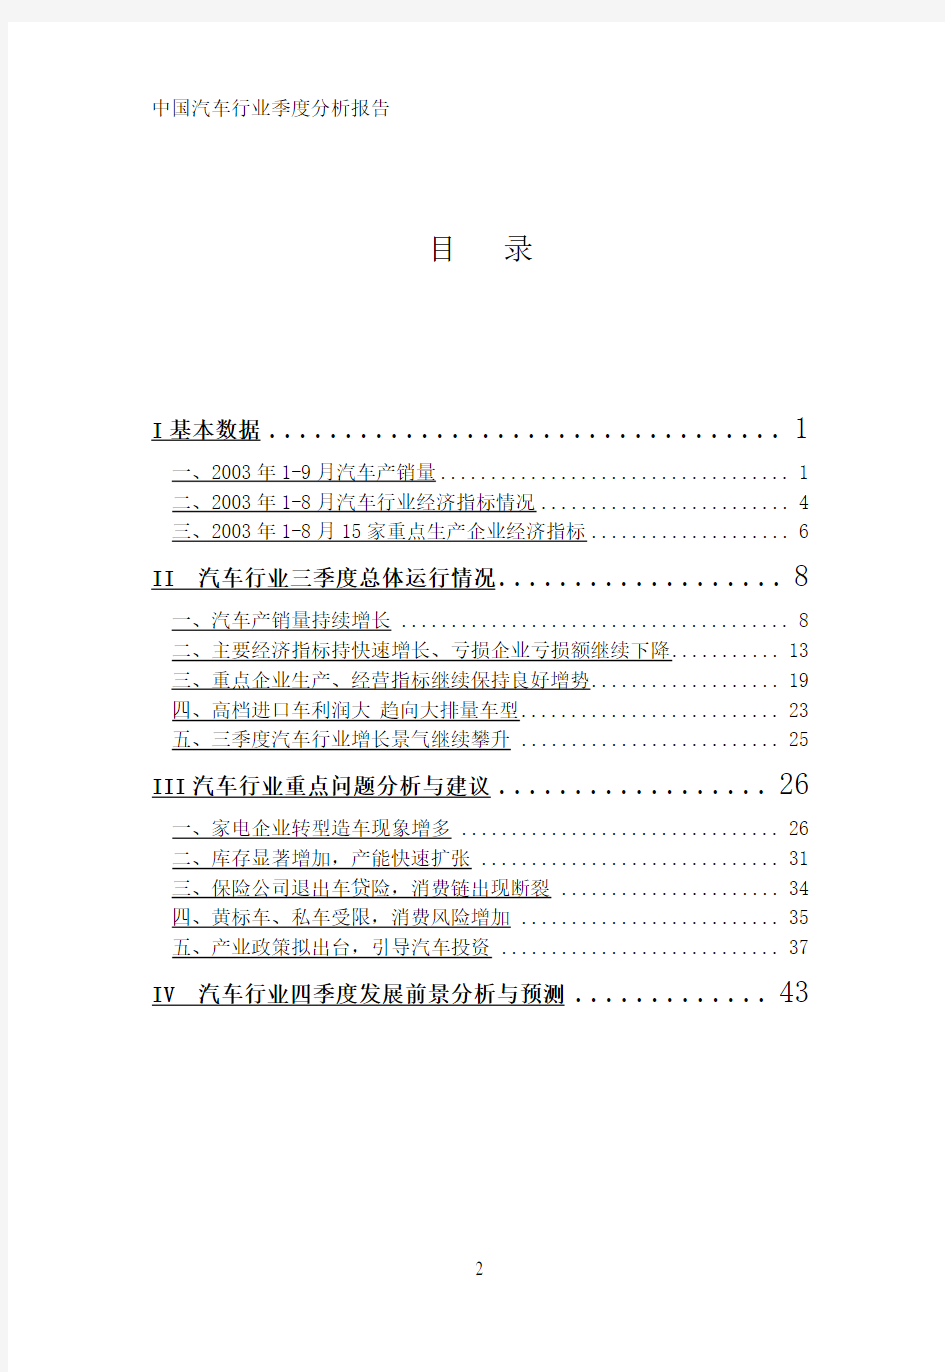 中国汽车行业季度分析报告-Q3(1)